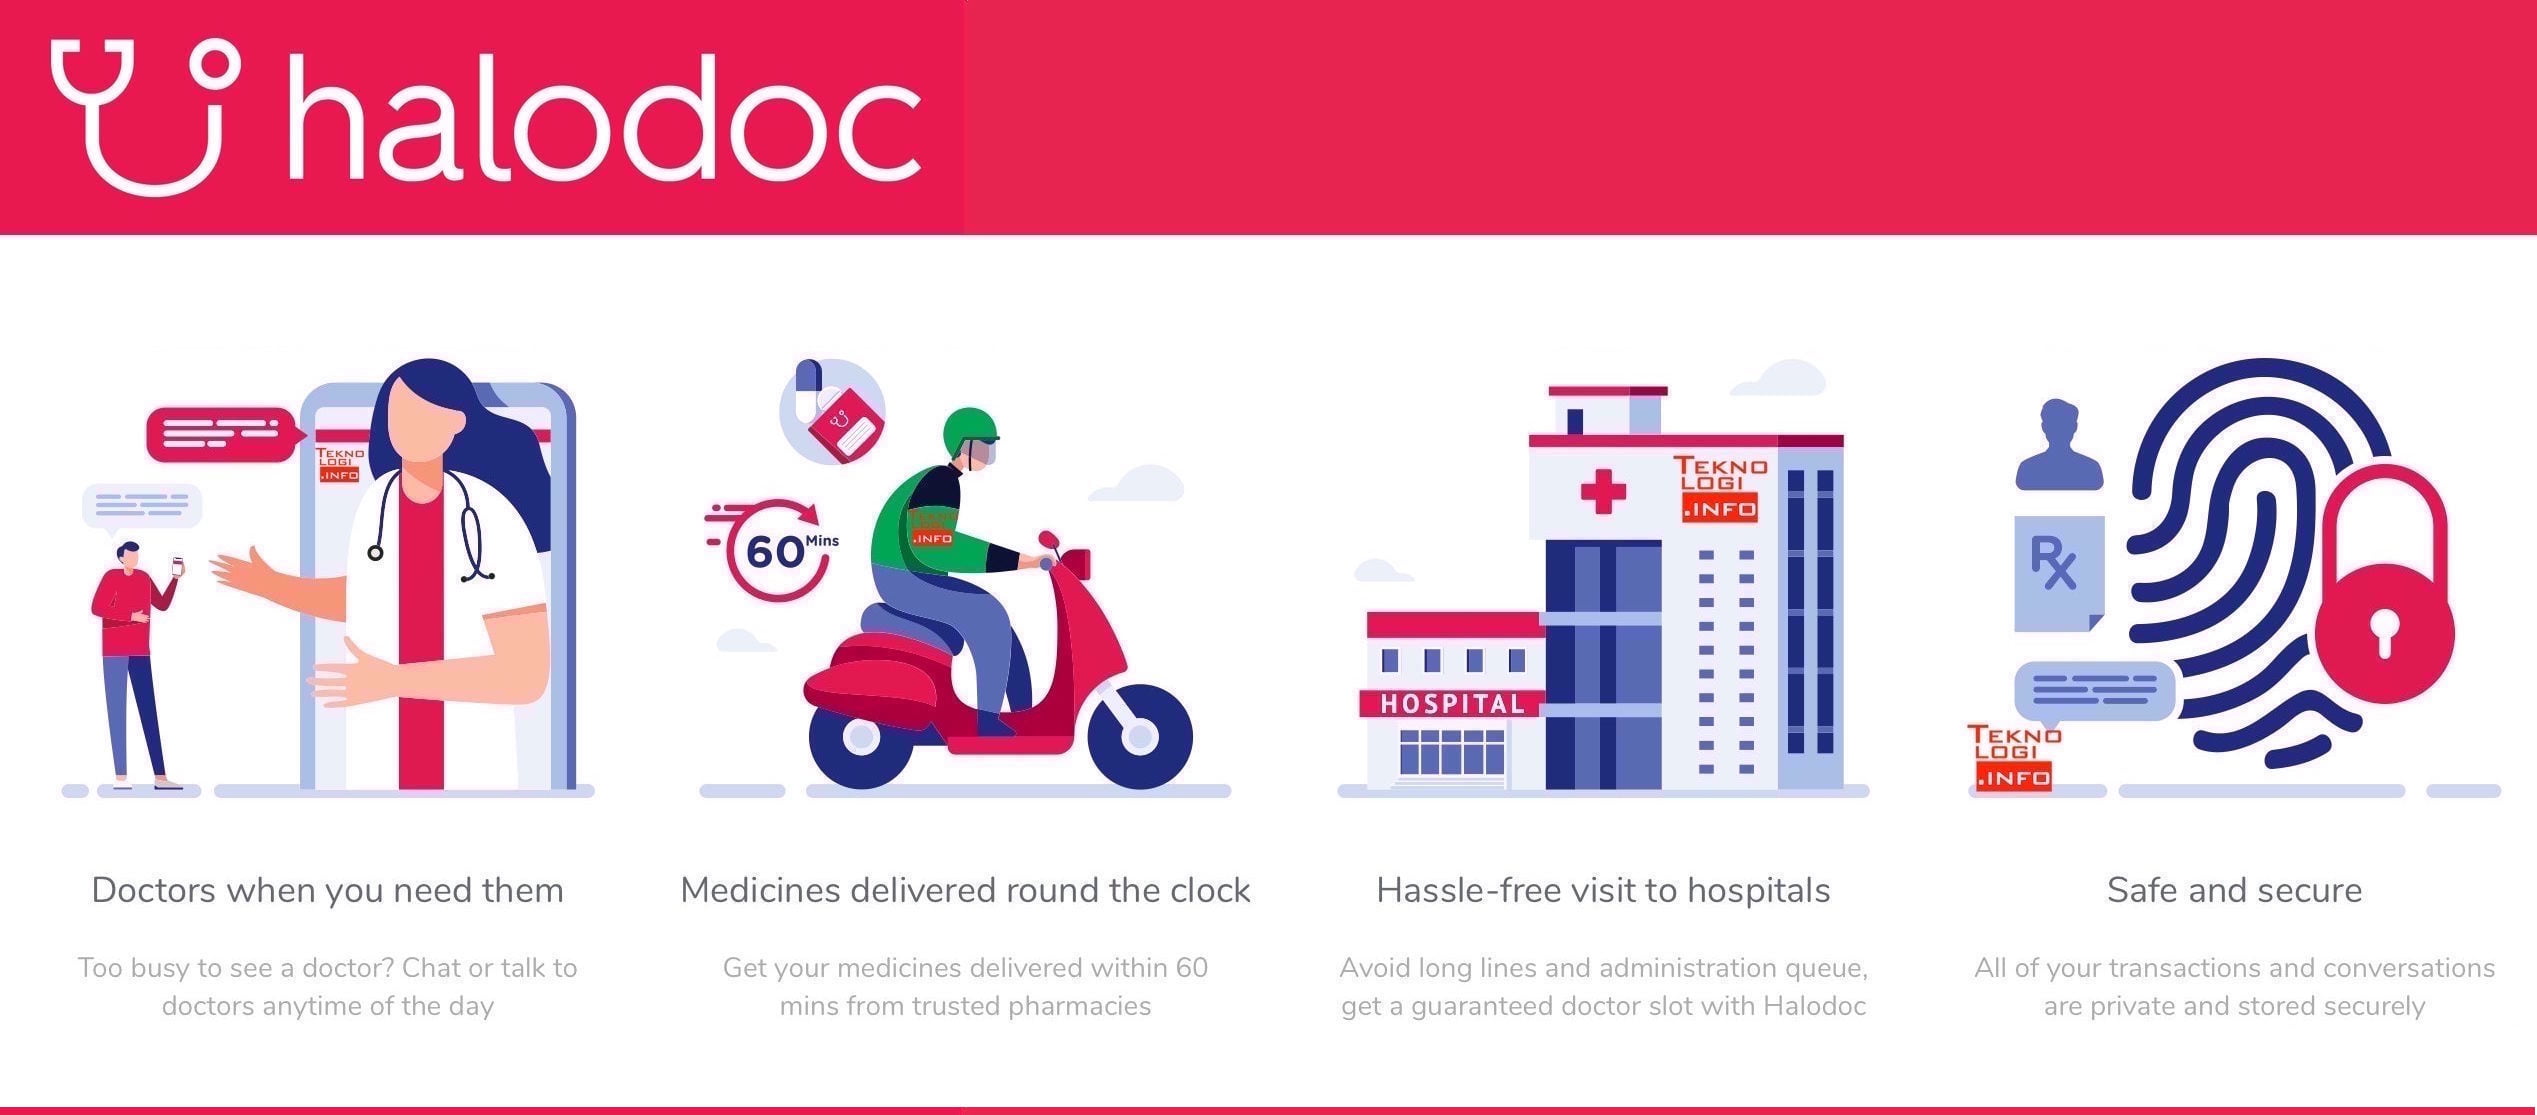 Mencoba Layanan Konsultasi Dokter di Halodoc | Teknologi.info